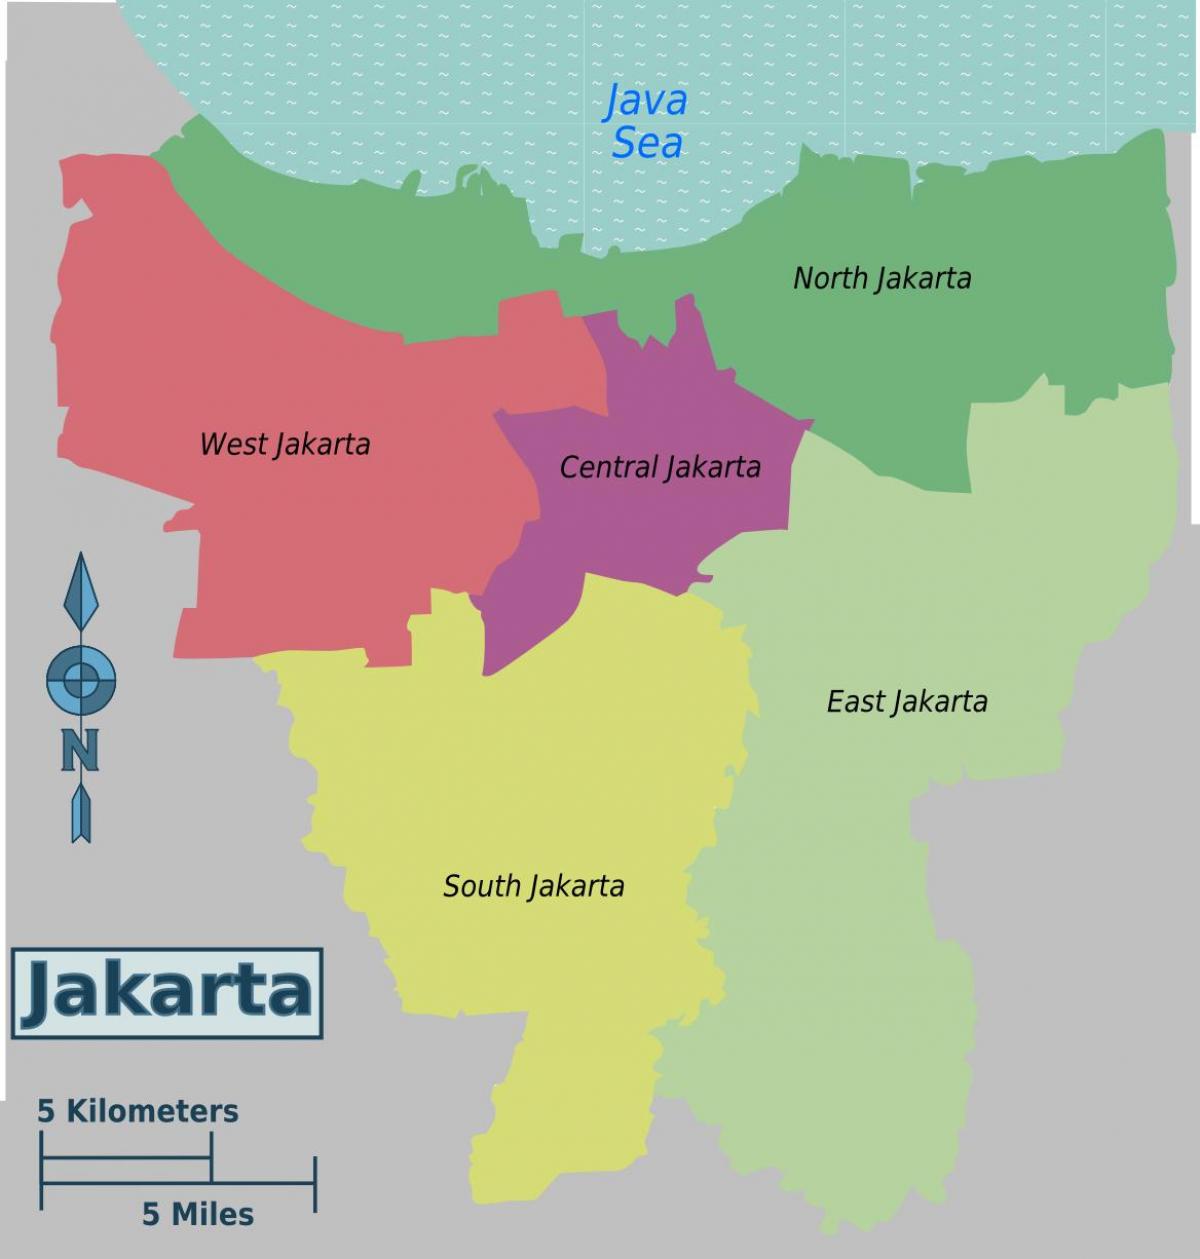 mji mkuu wa indonesia ramani